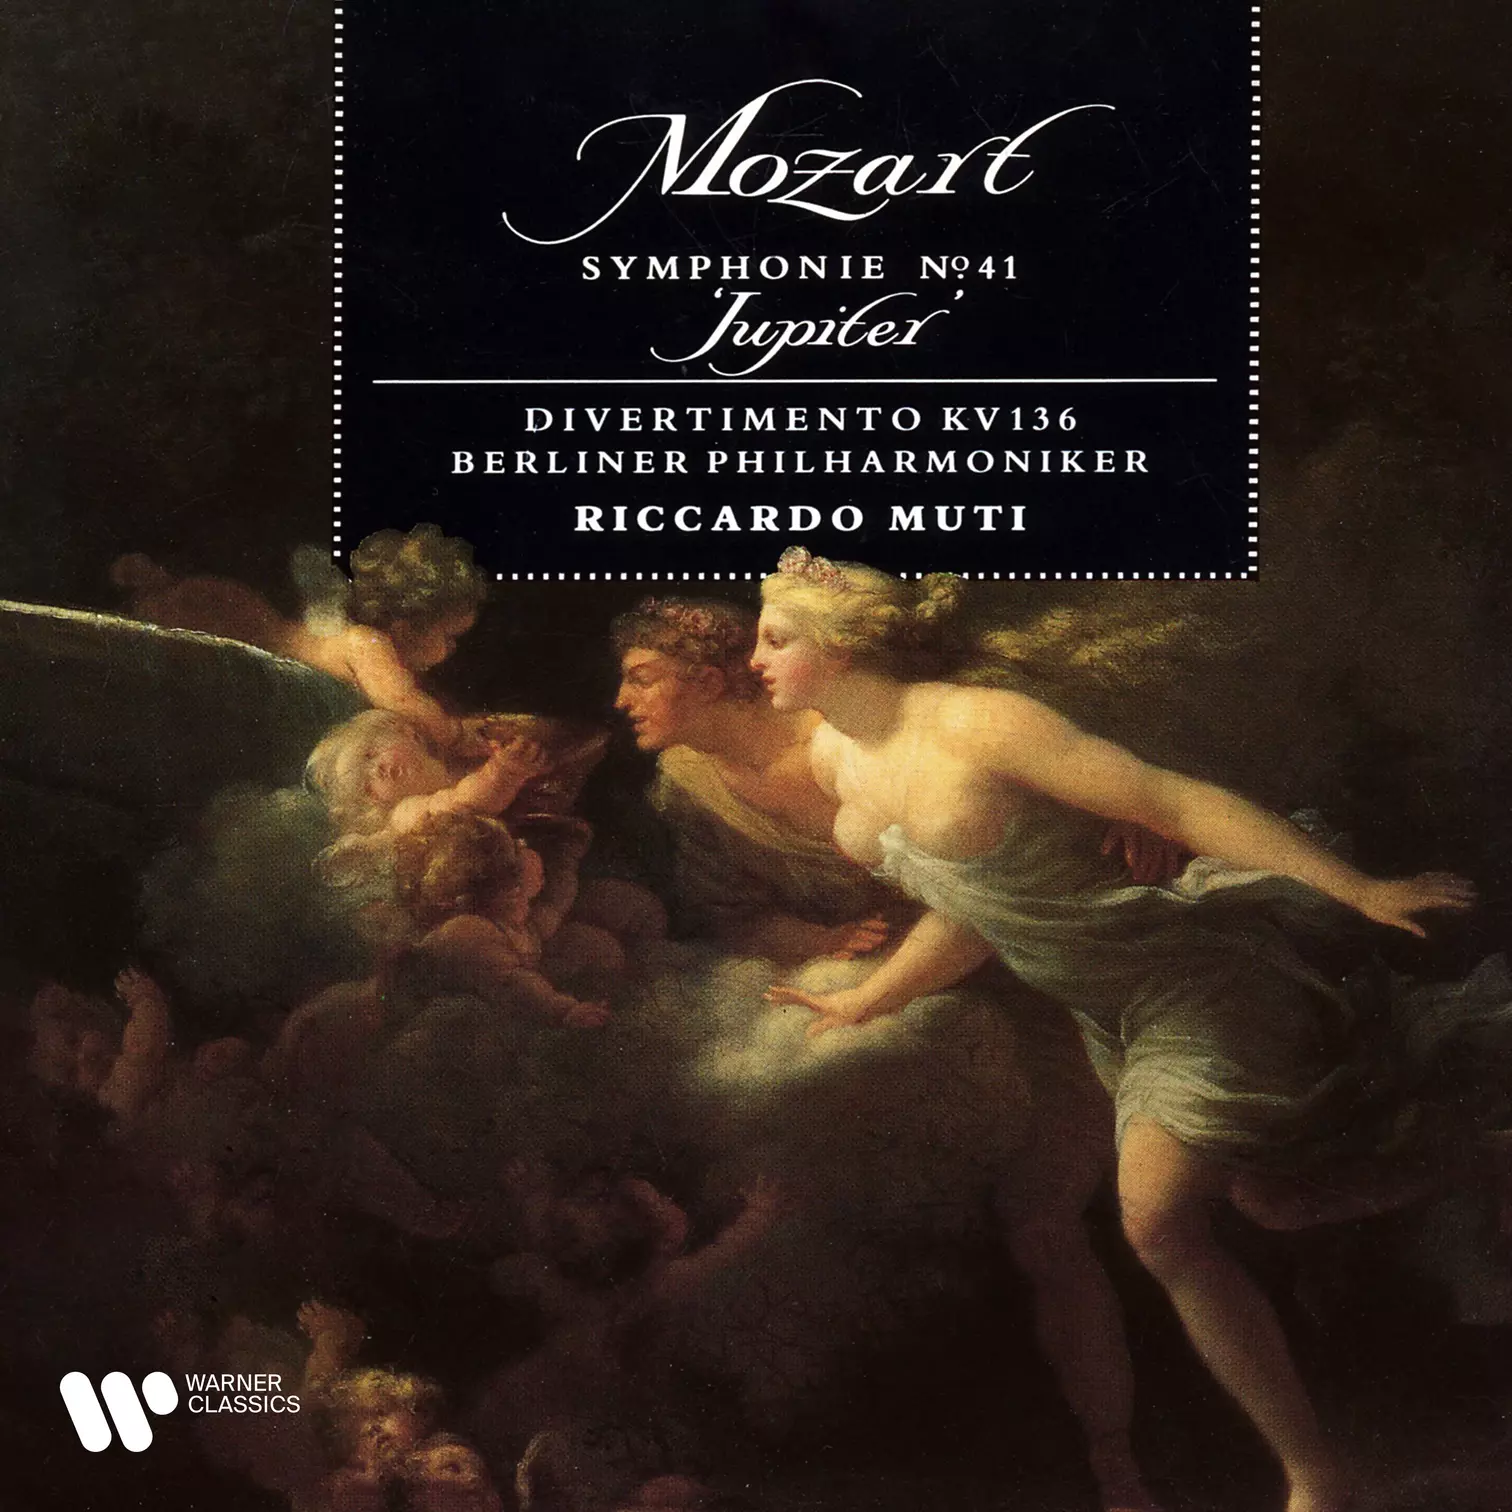 Mozart: Symphony No. 41 “Jupiter” & Divertimento, K. 136